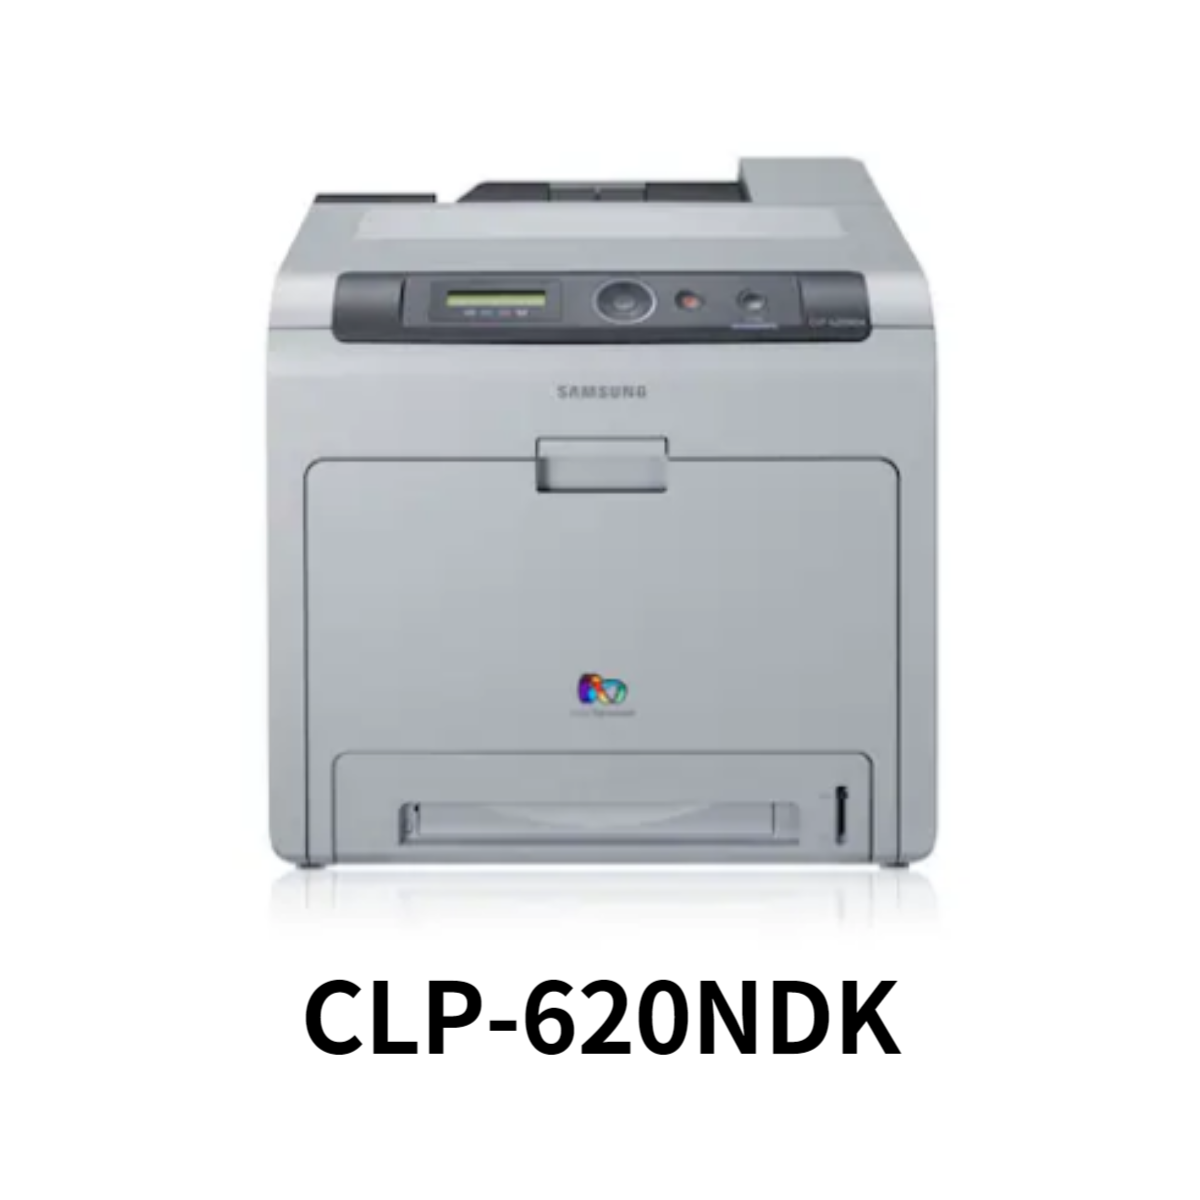 CLP-620NDK 프린터